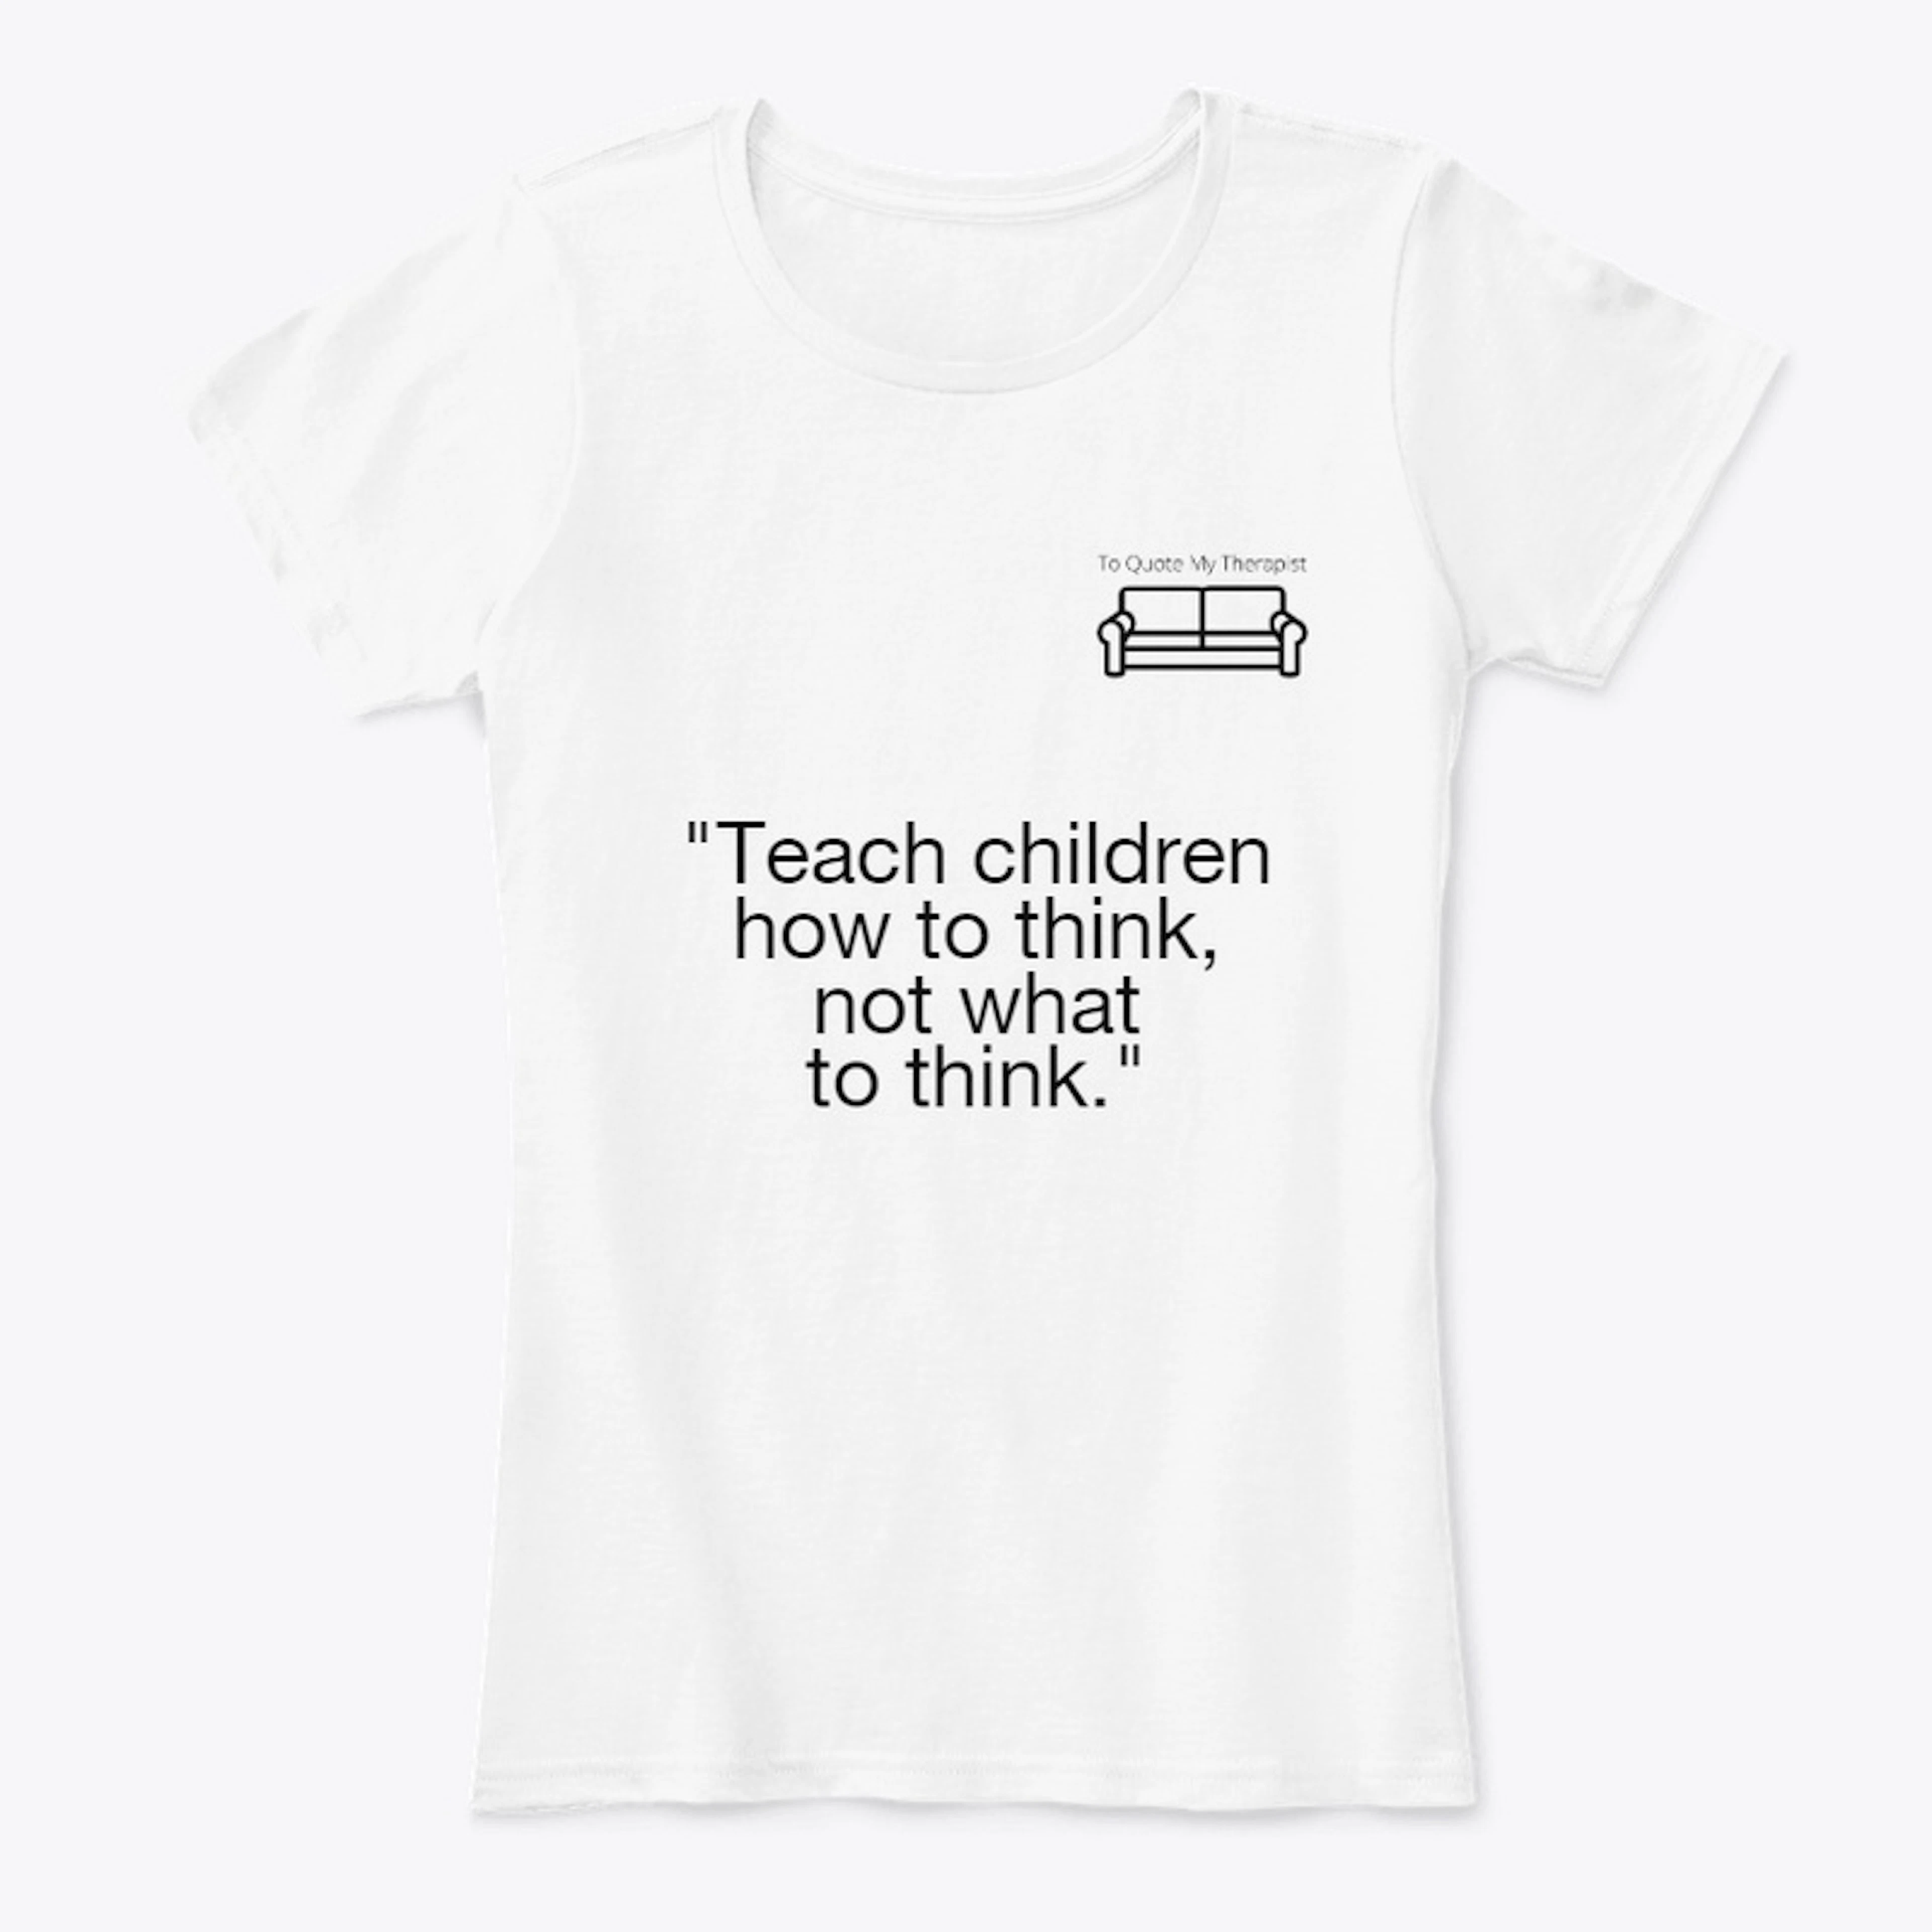 TQMT - "Teach children how to think"